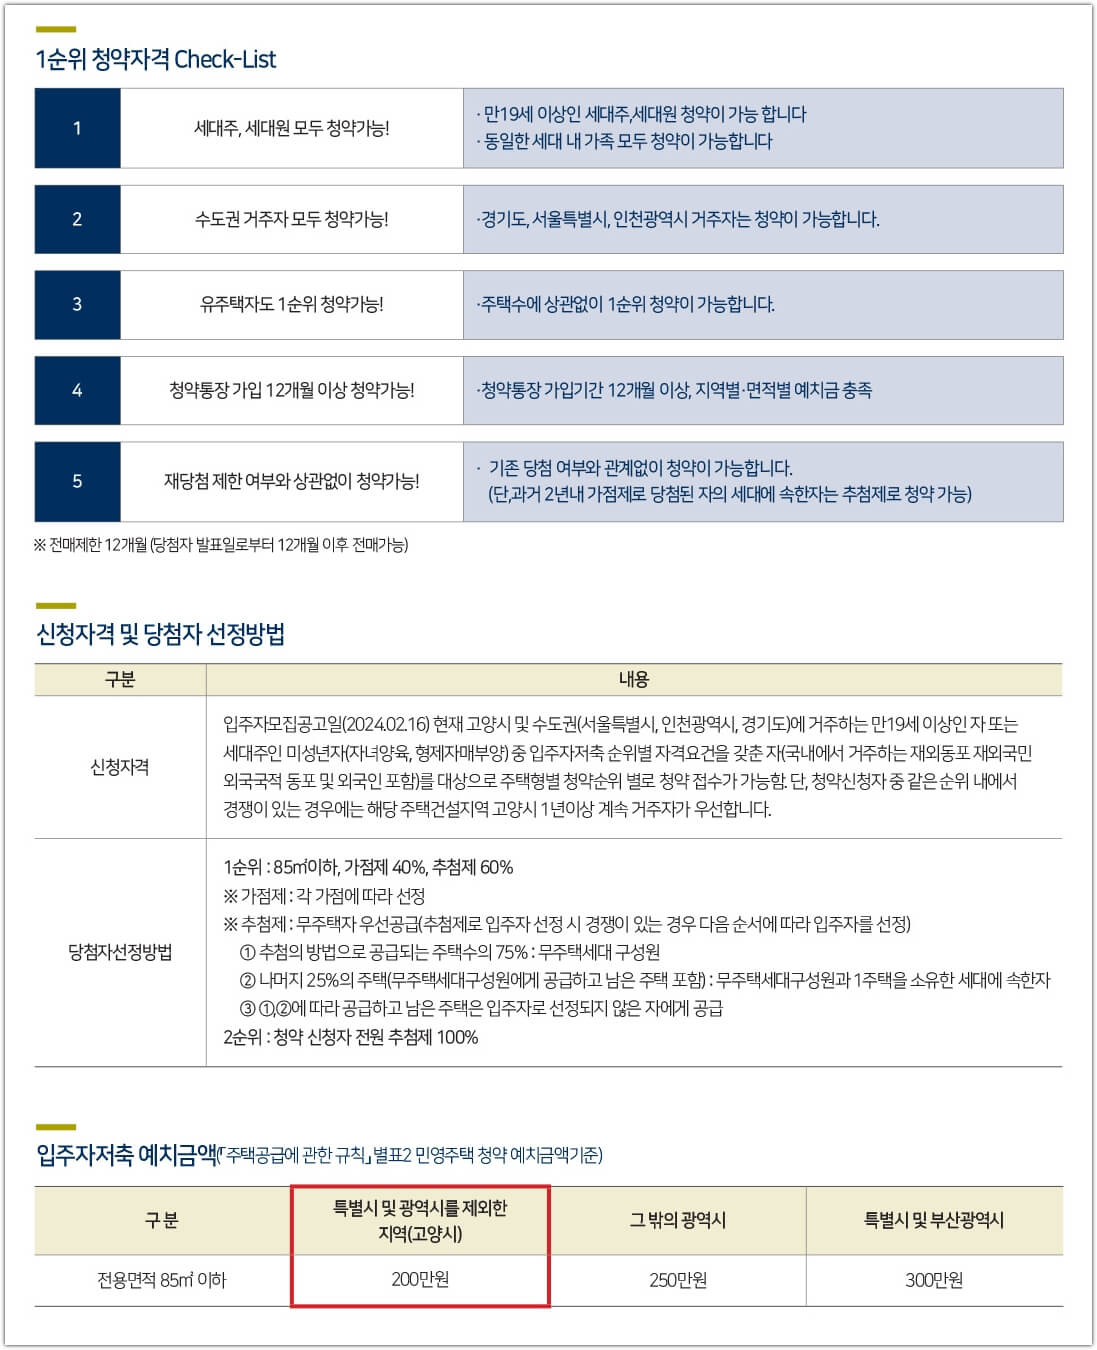 휴먼빌 일산 클래스원 신청 자격 및 청약 저축 예치금